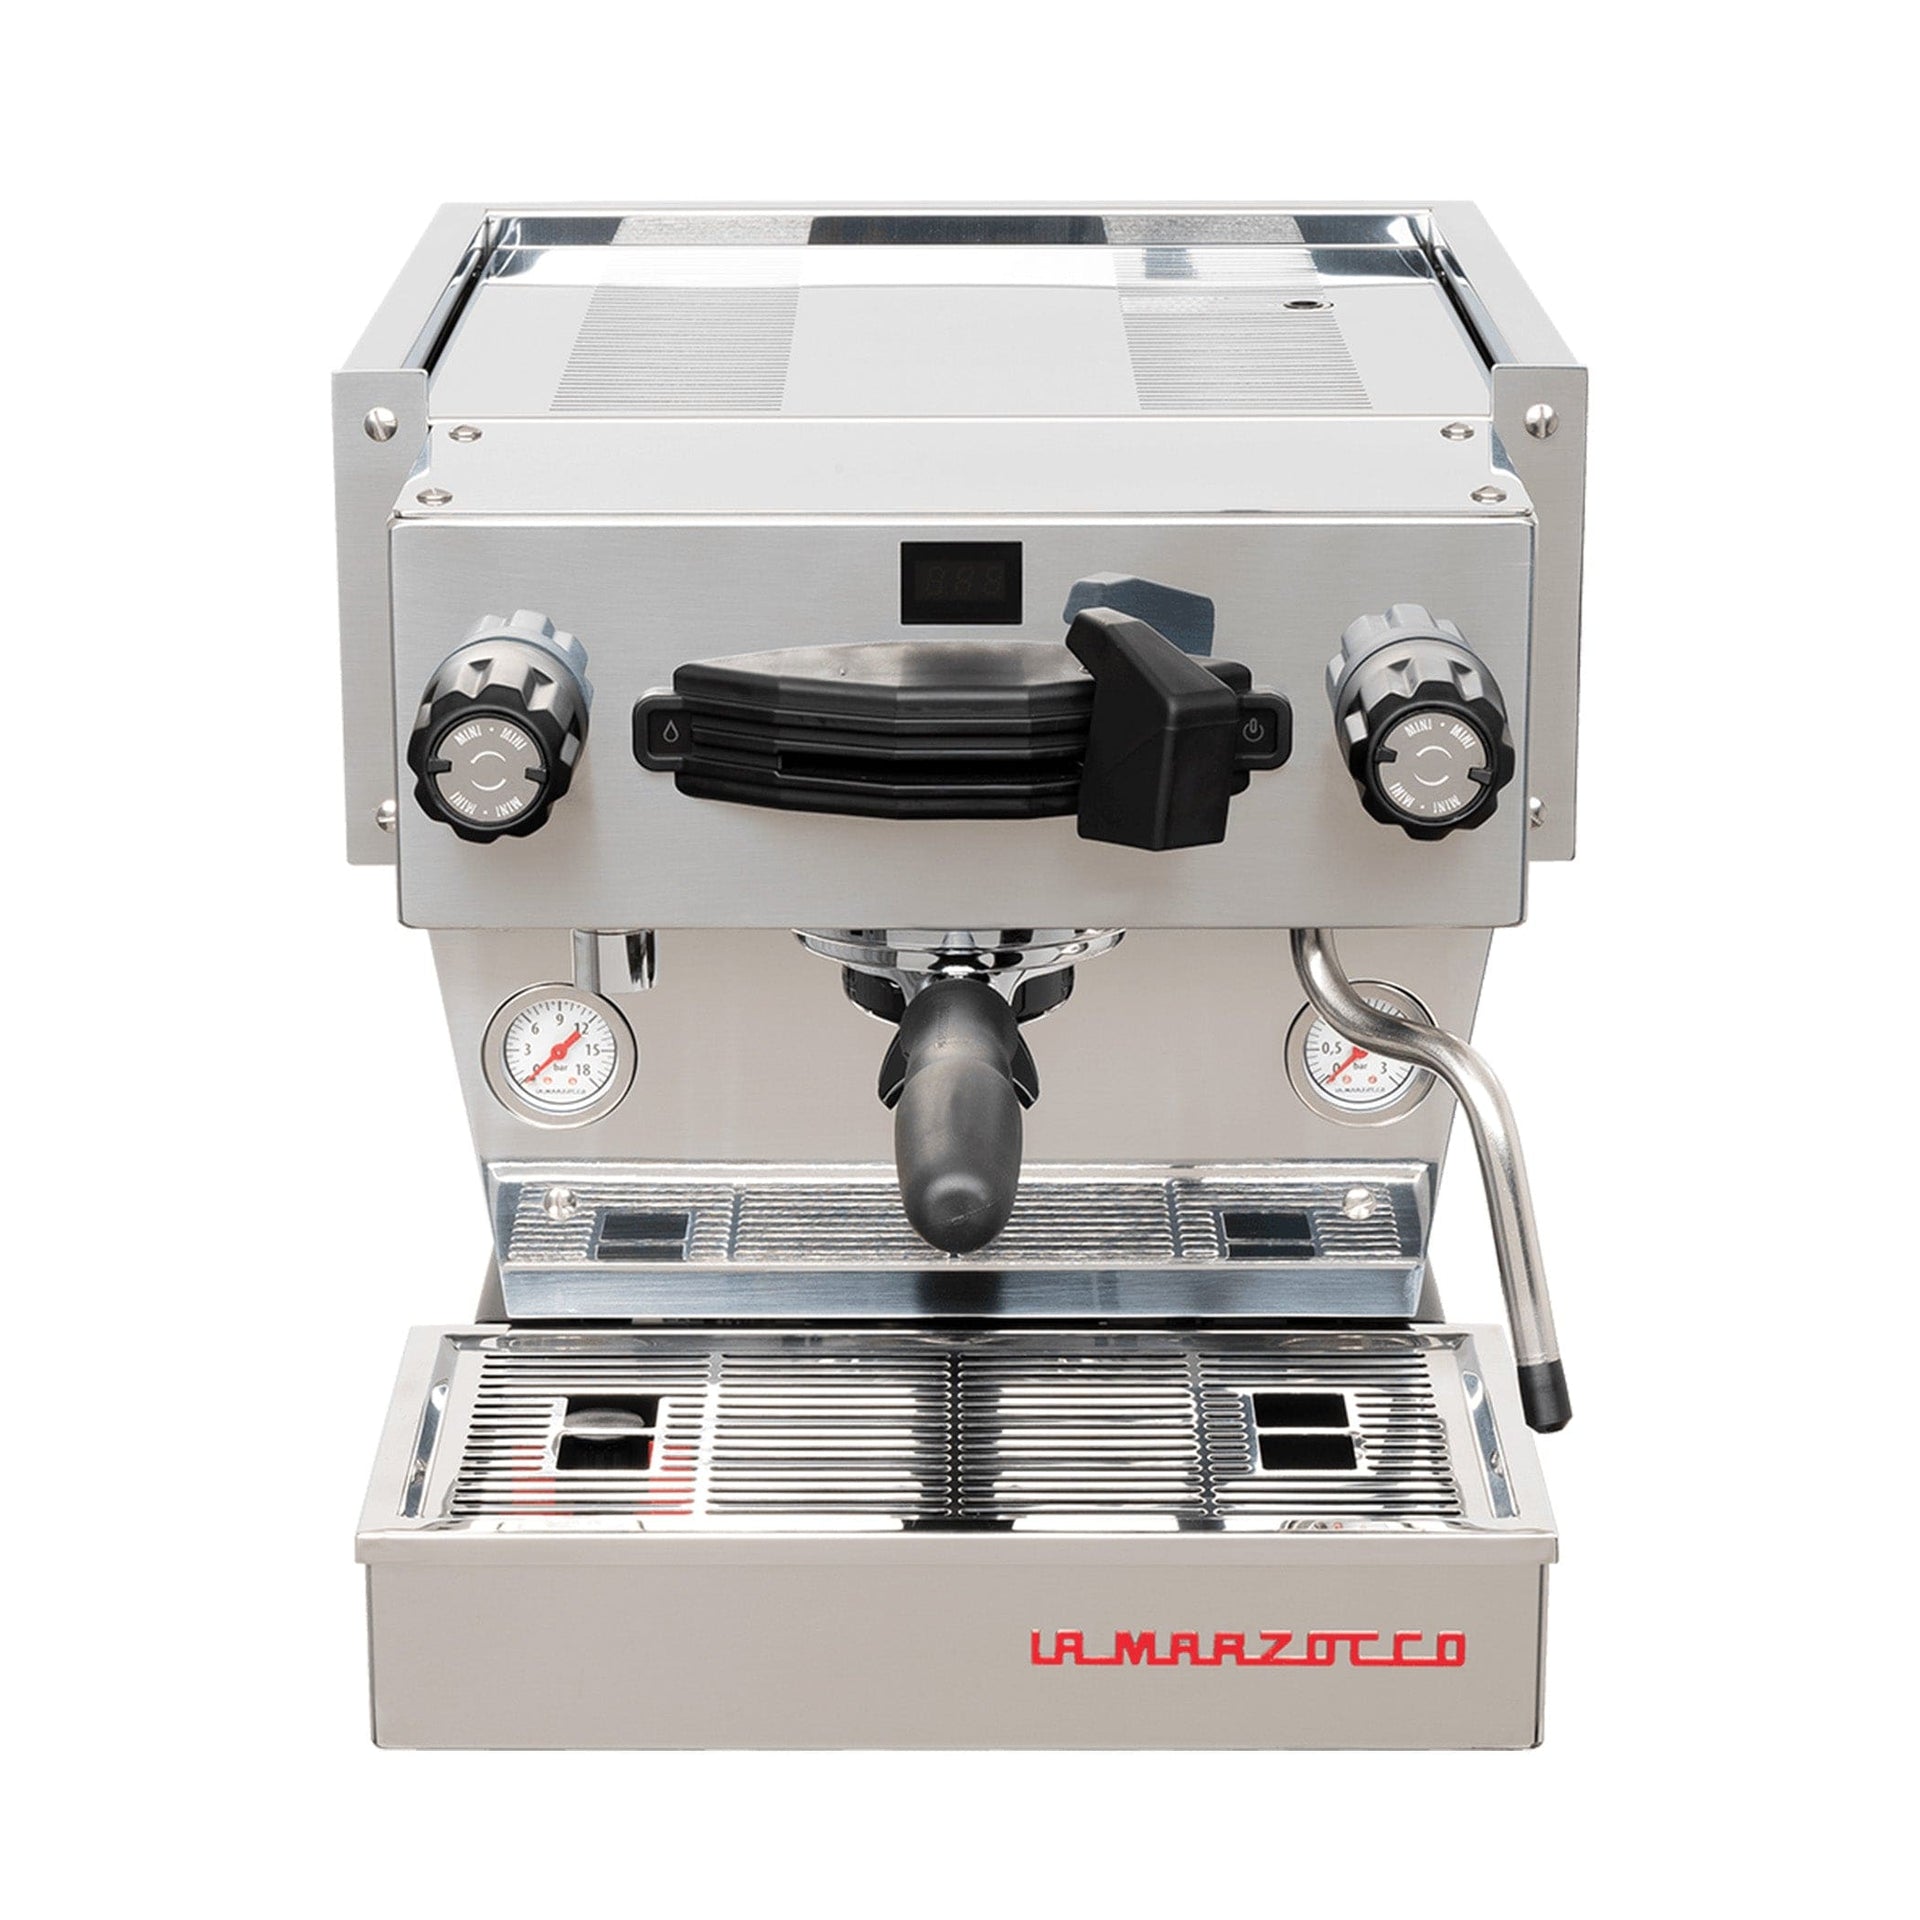 marzocchi coffee machine